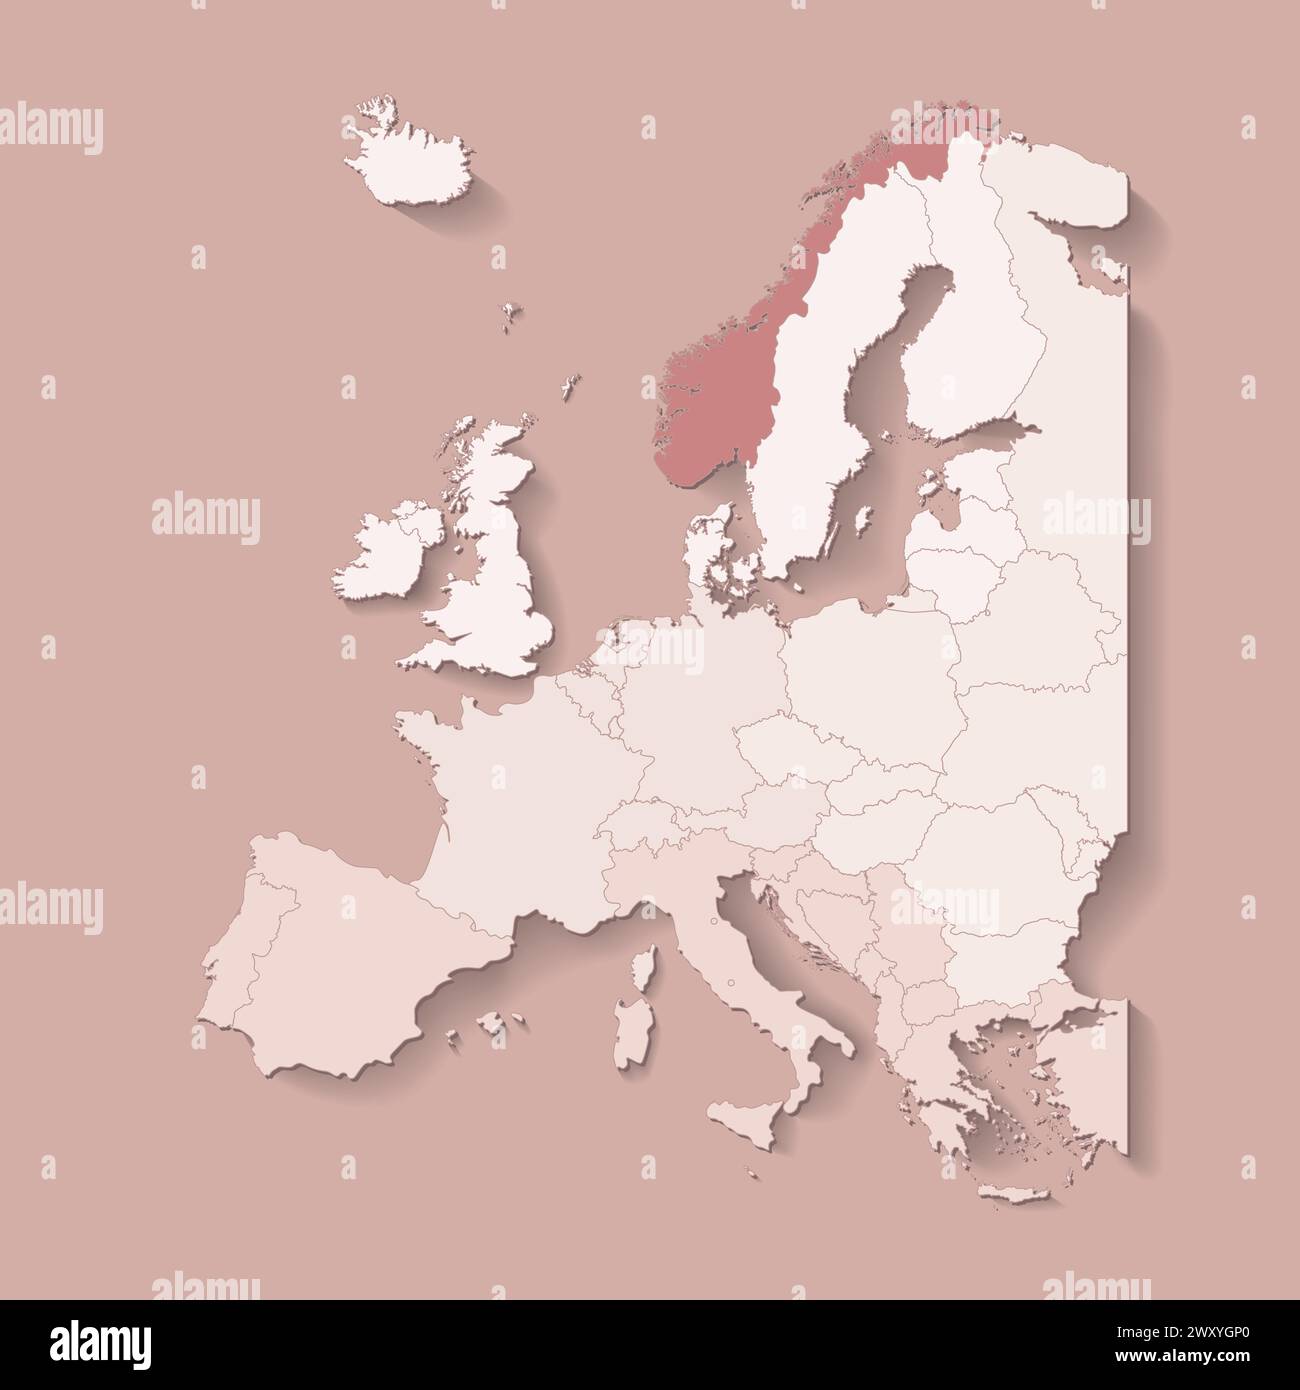 Illustrazione vettoriale con terra europea con confini di stati e paese contrassegnato Norvegia. Mappa politica in colori marroni con occidentale, sud e così via Illustrazione Vettoriale